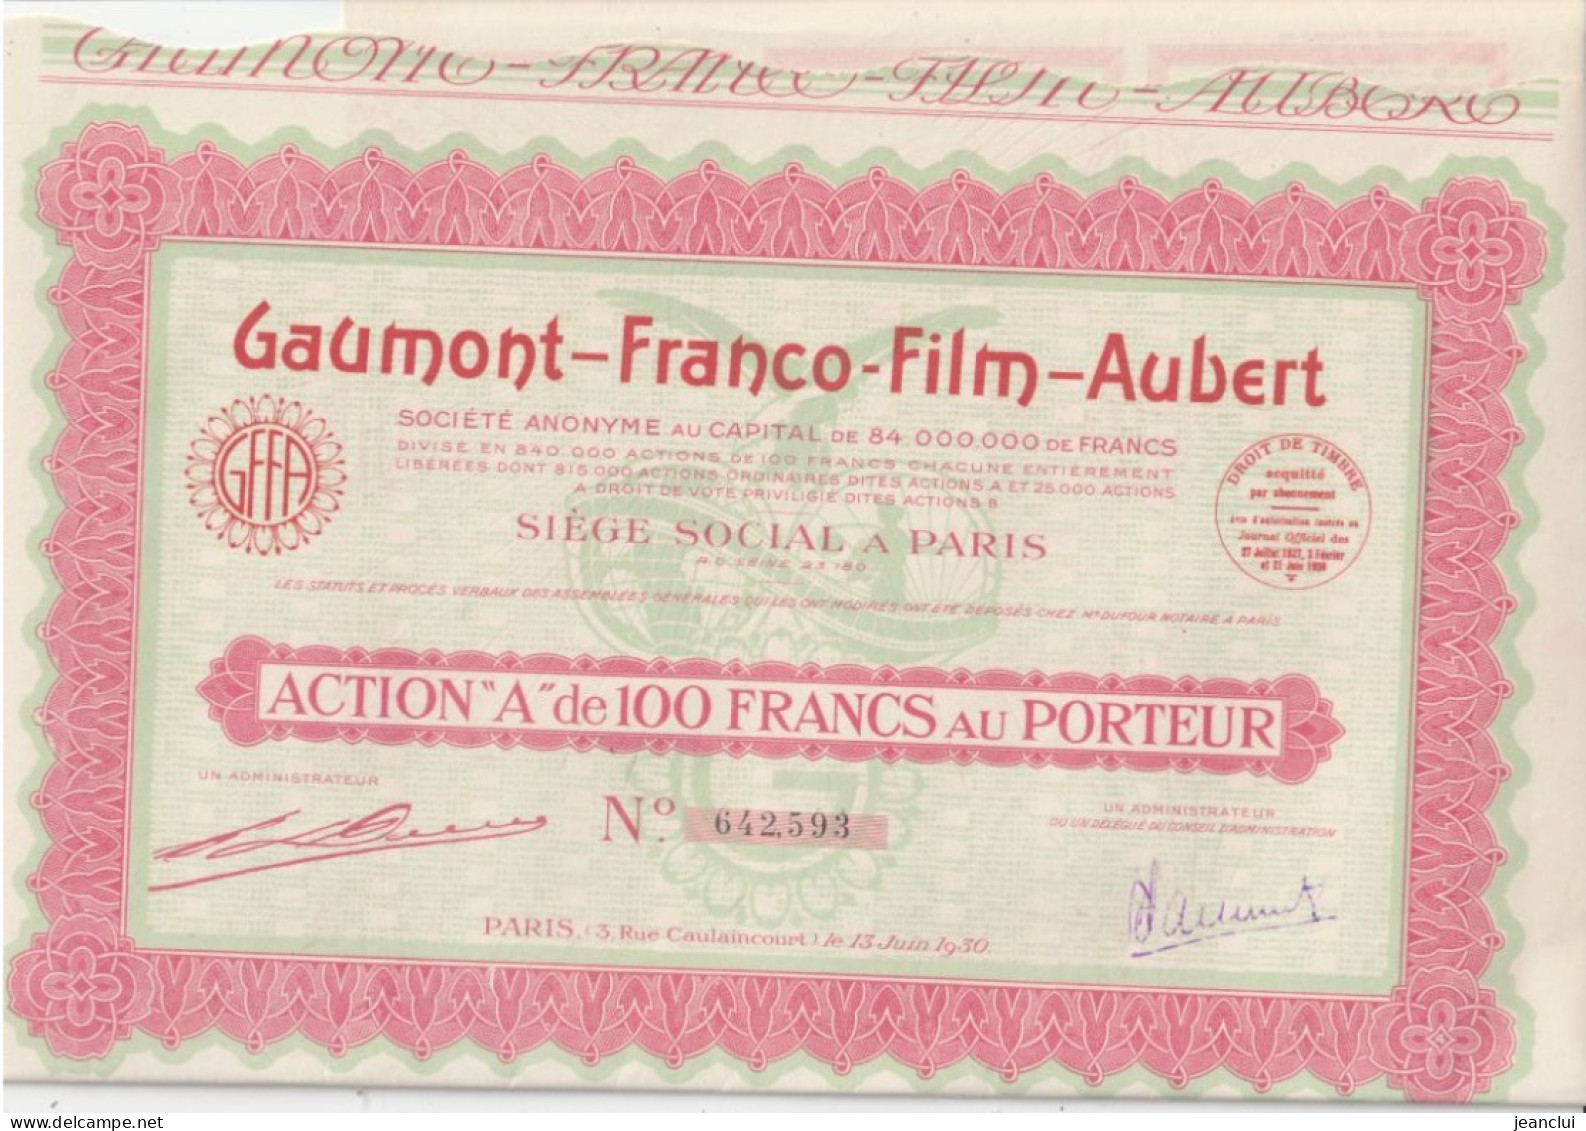 GAUMONT - FRANCO - FILM - AUBERT  . ACTION " A " De 100 FRANCS AU PORTEUR  N° 642.593 - Cinéma & Théatre